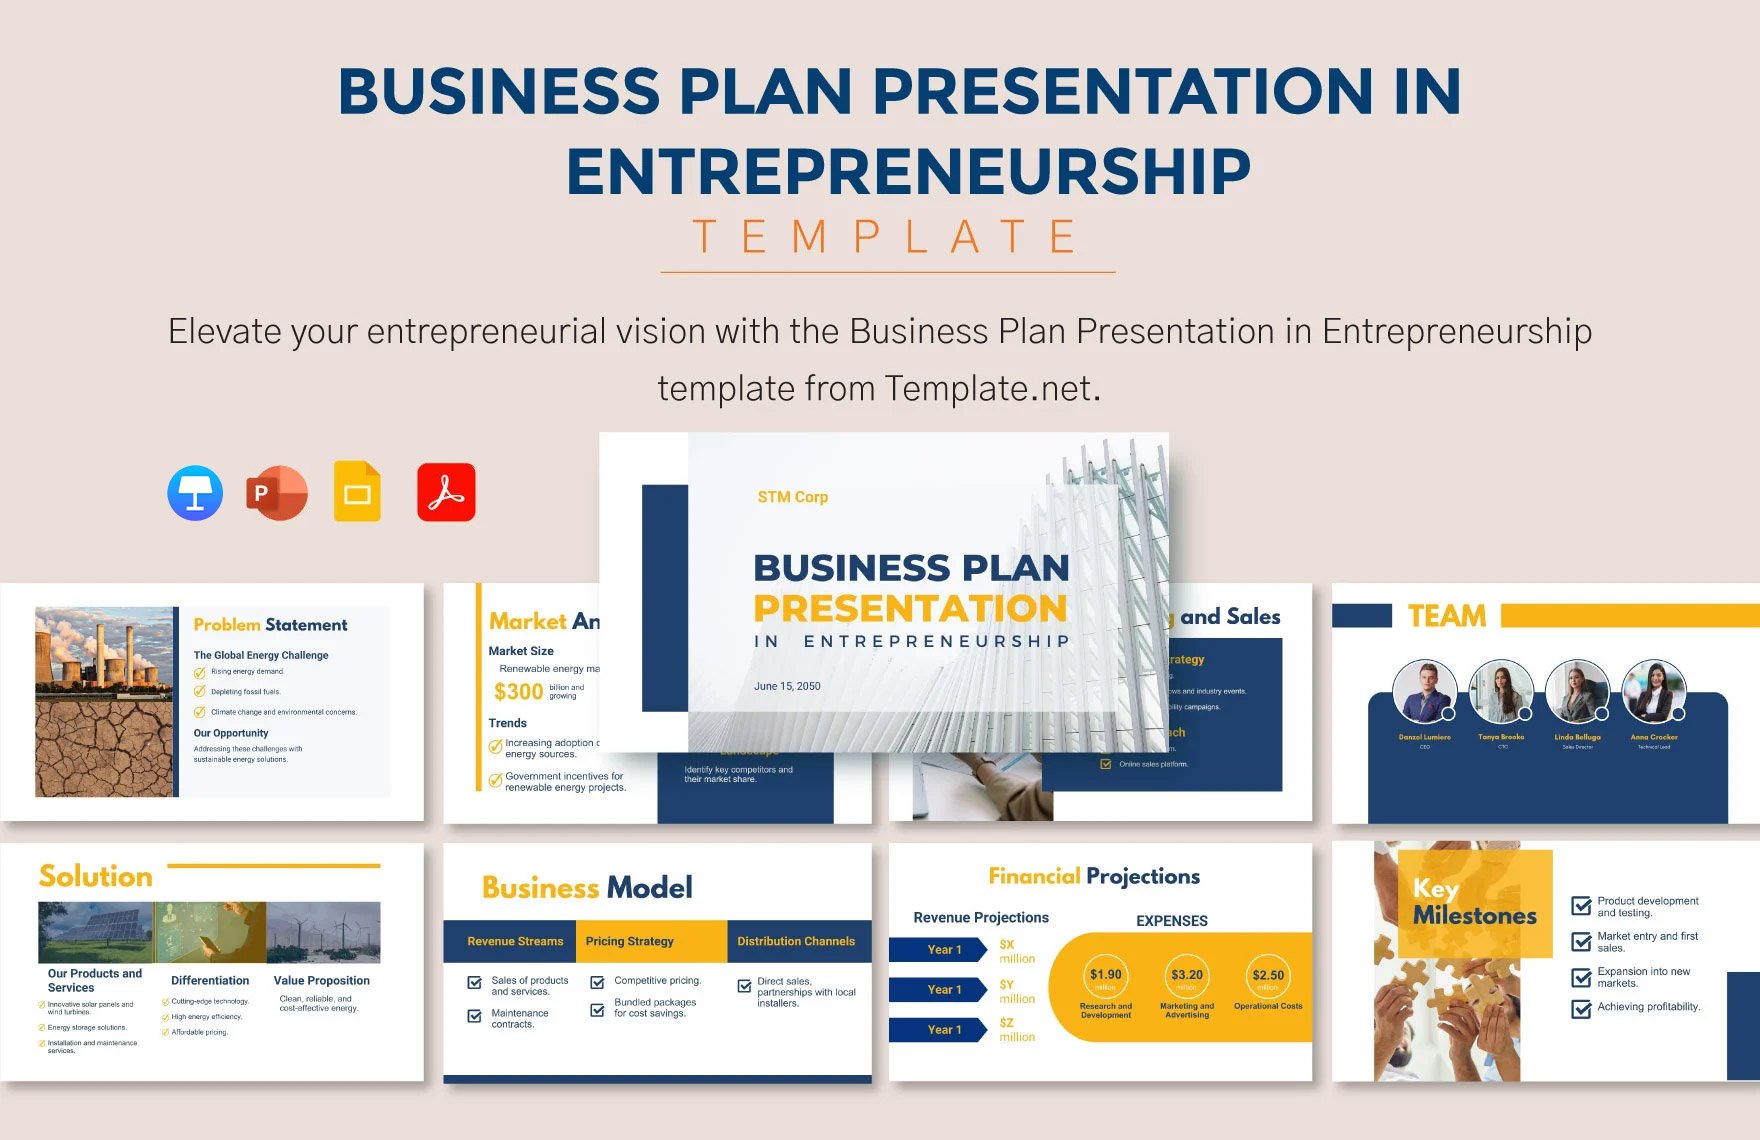 Business Plan in Entrepreneurship Template